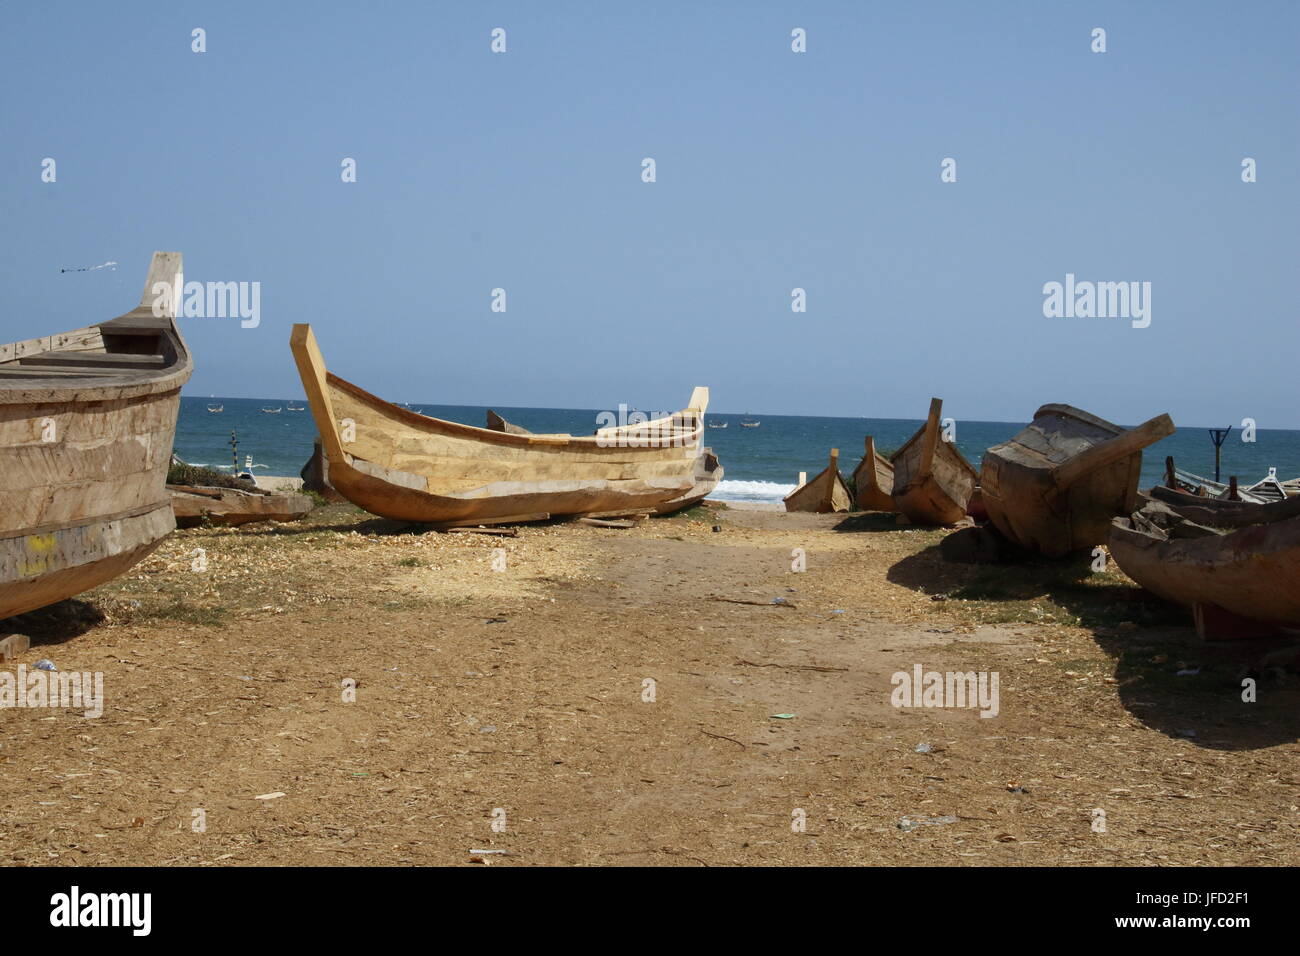 Fishing boat at Prampram beach Stock Photo